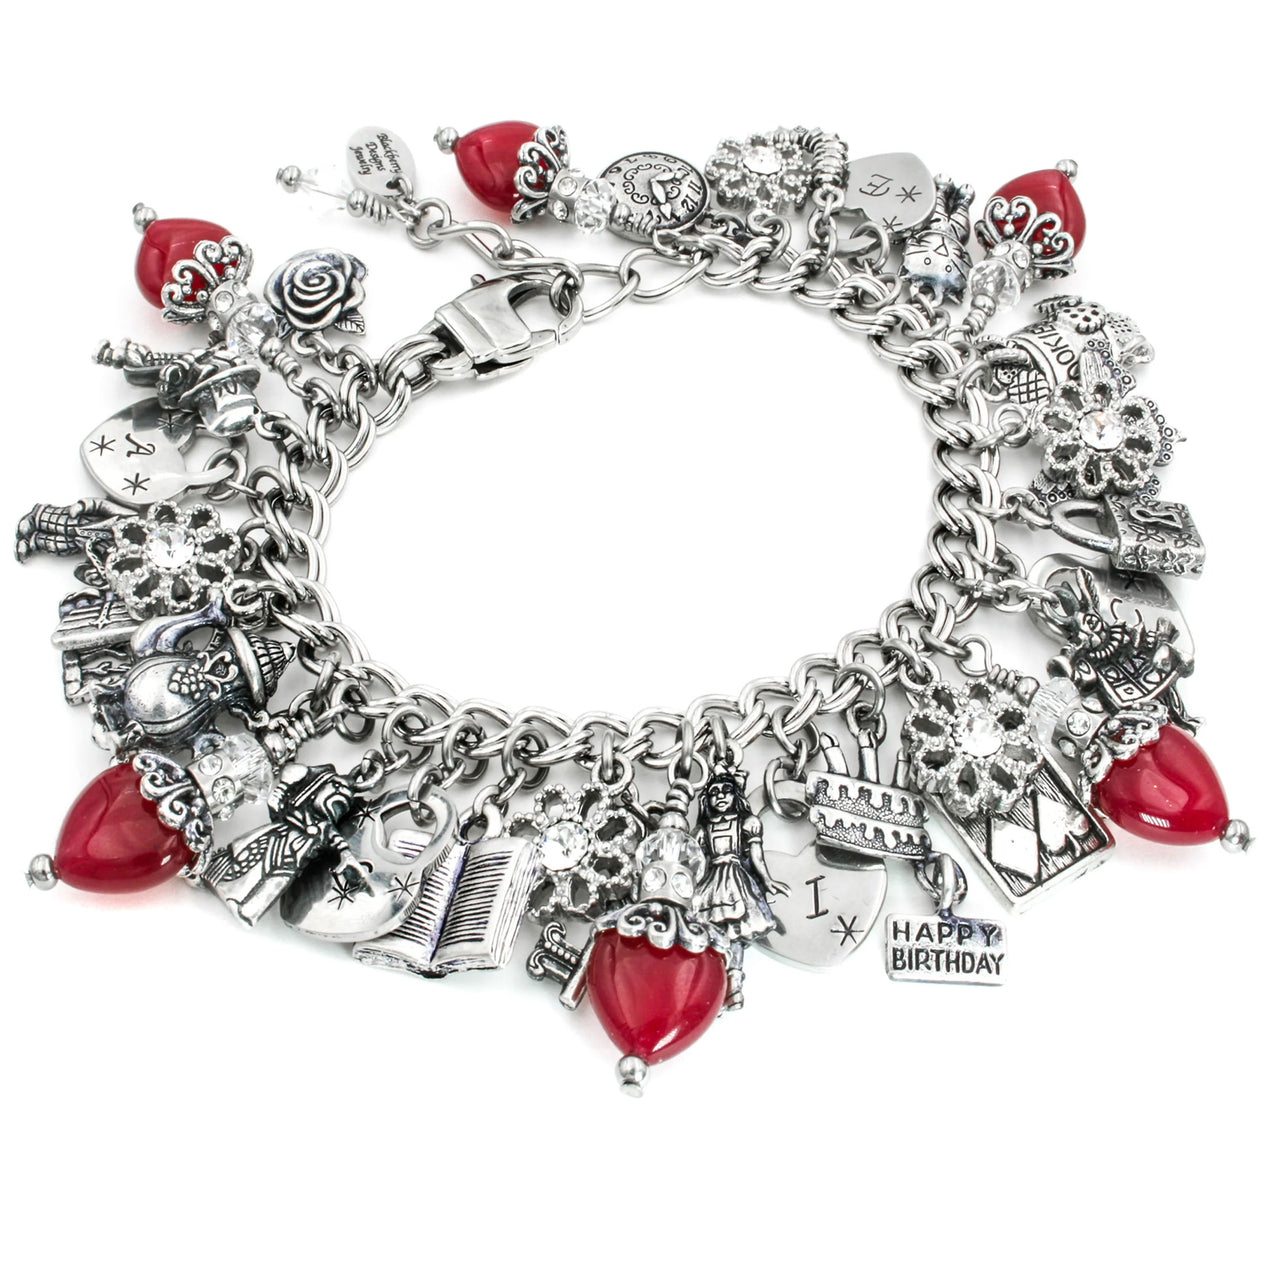 alice in wonderland, charm bracelet, red heart jewelry